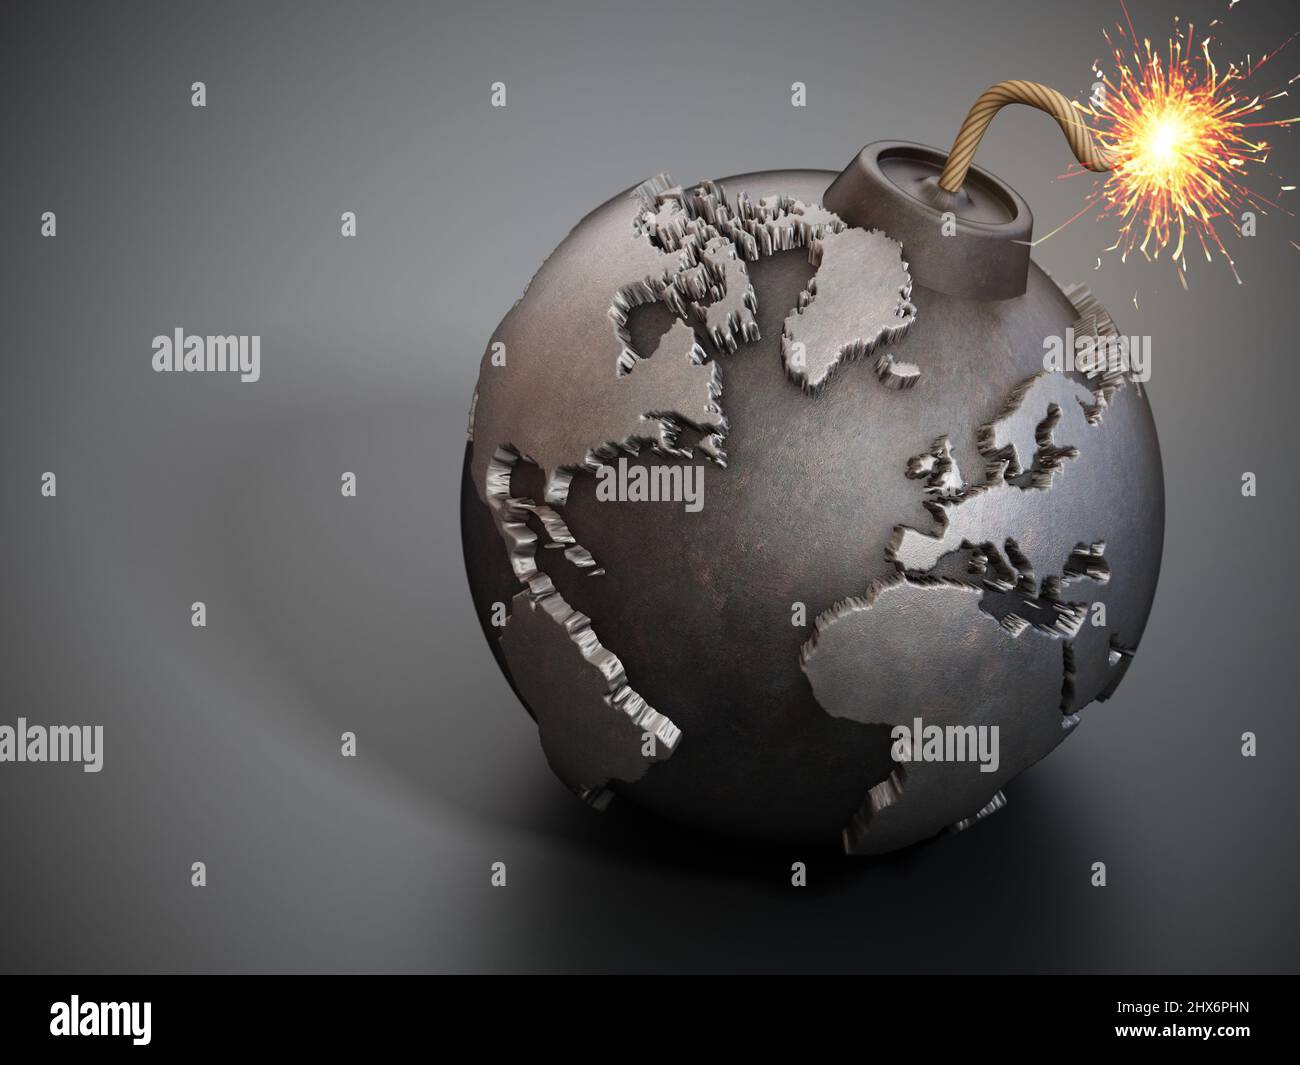 World map shaped bomb with burning fuse. 3D illustration. Stock Photo